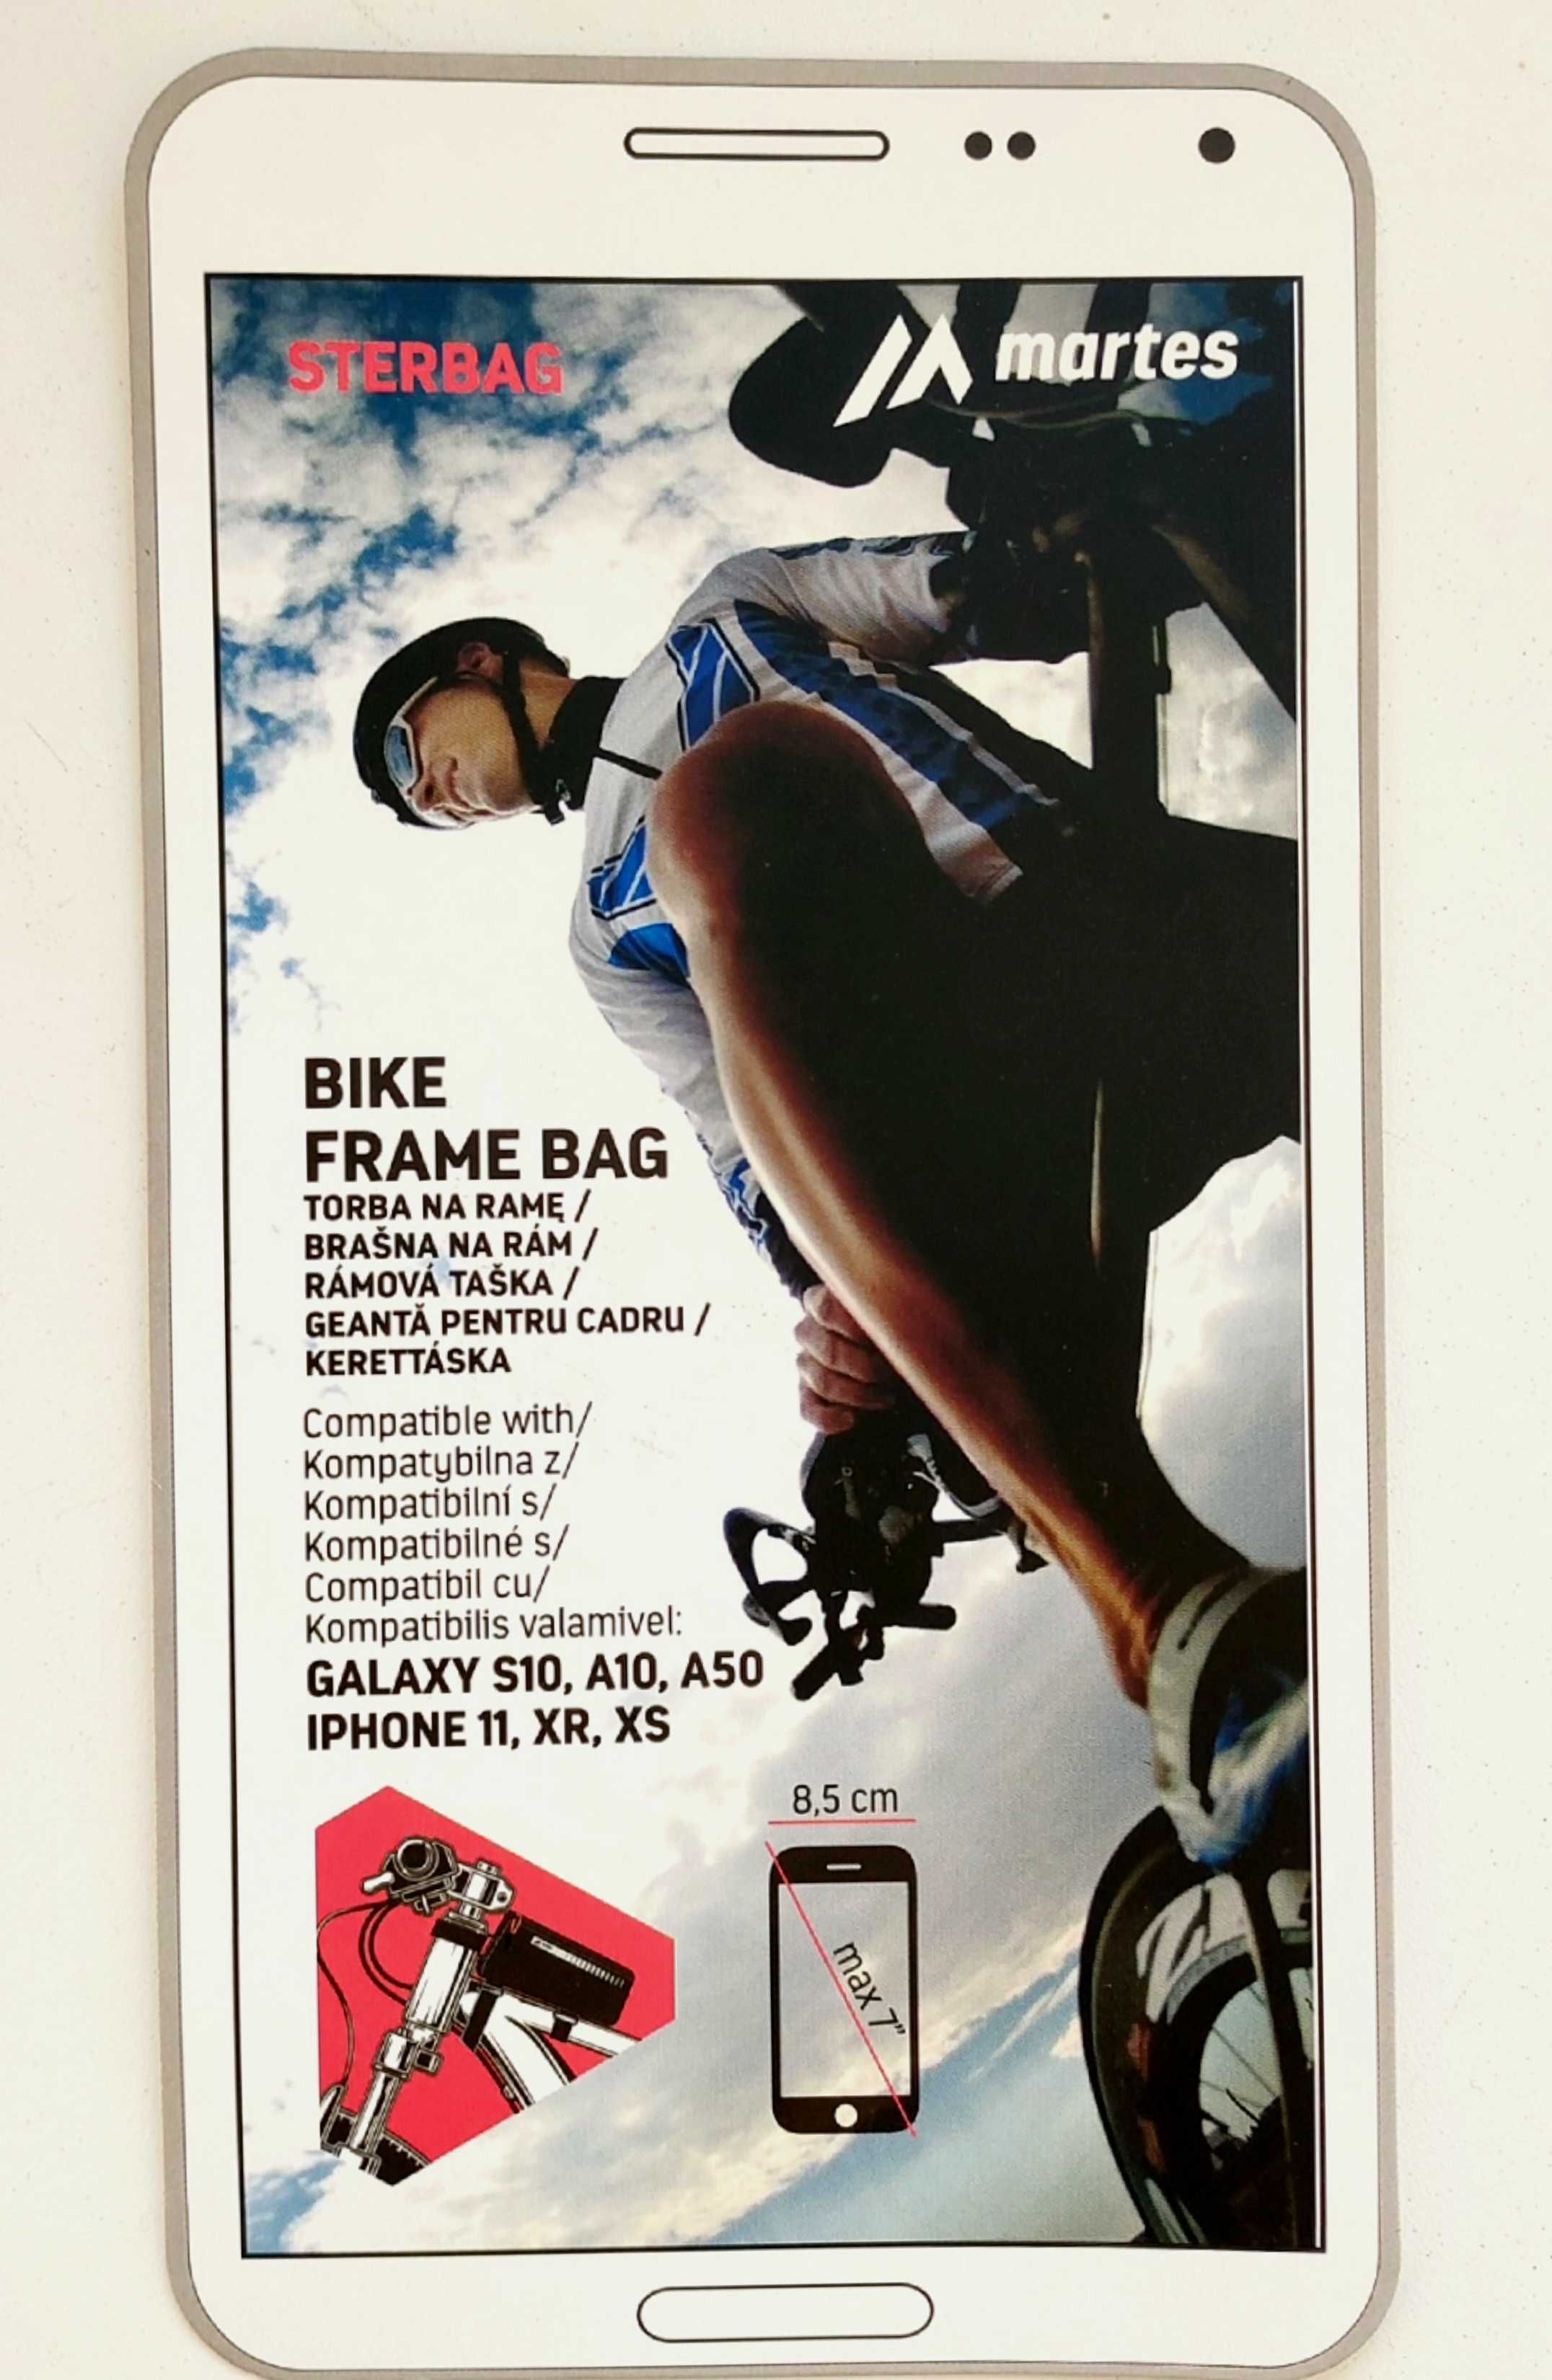 Sakwa torba rowerowa etui na telefon max 7" Sterbag Martes